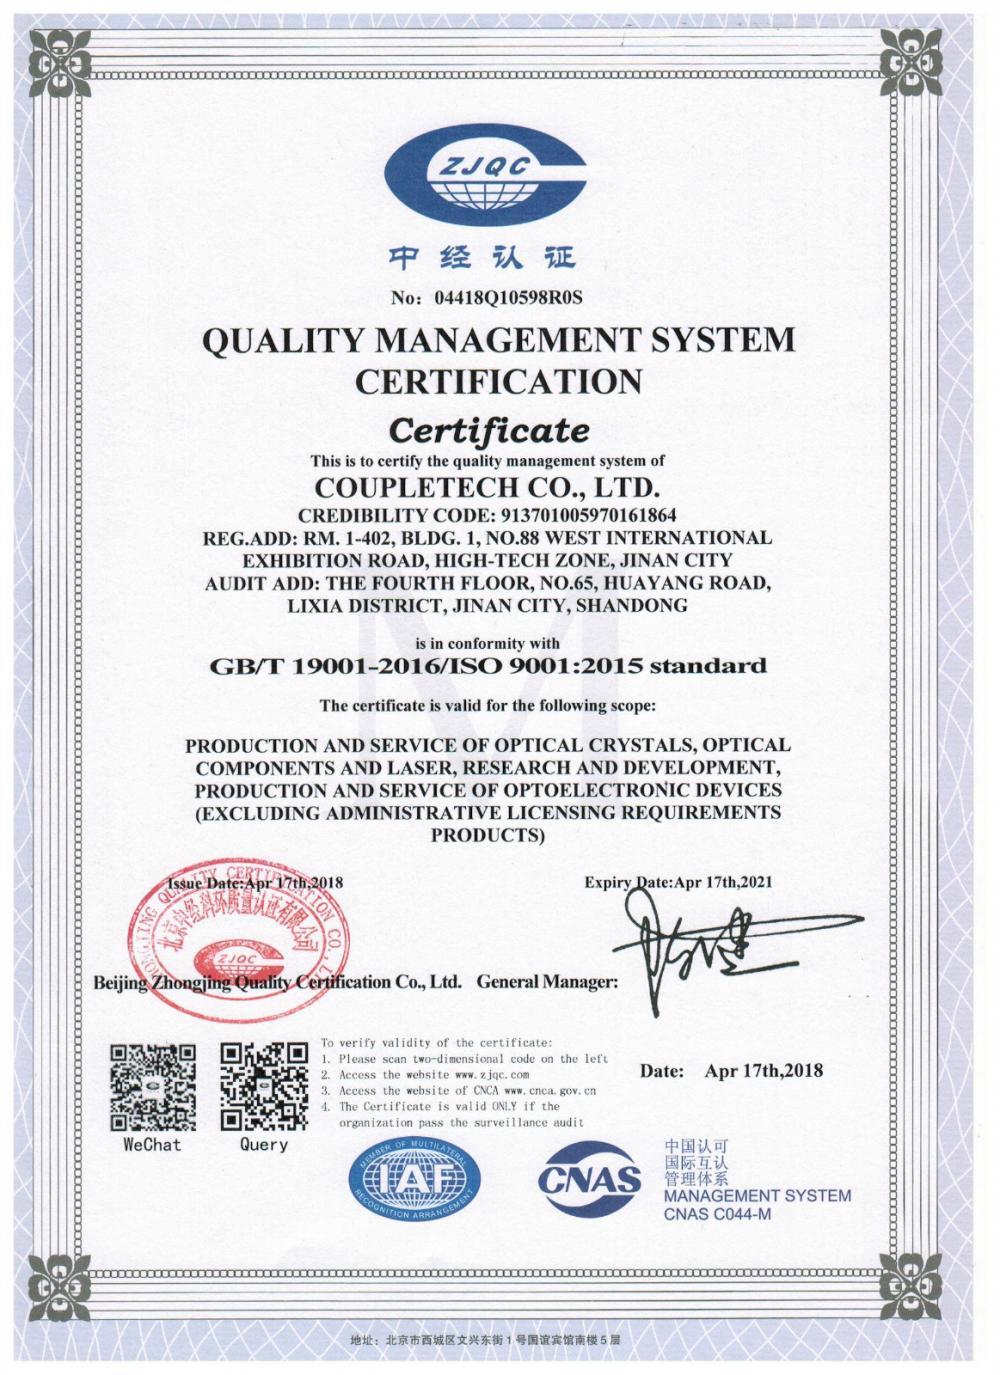 Ang Coupletech Co., Ltd. ay nakapasa sa sertipikasyon: Isang modular bracket para sa mga aktibong kristal na kontrol sa temperatura.